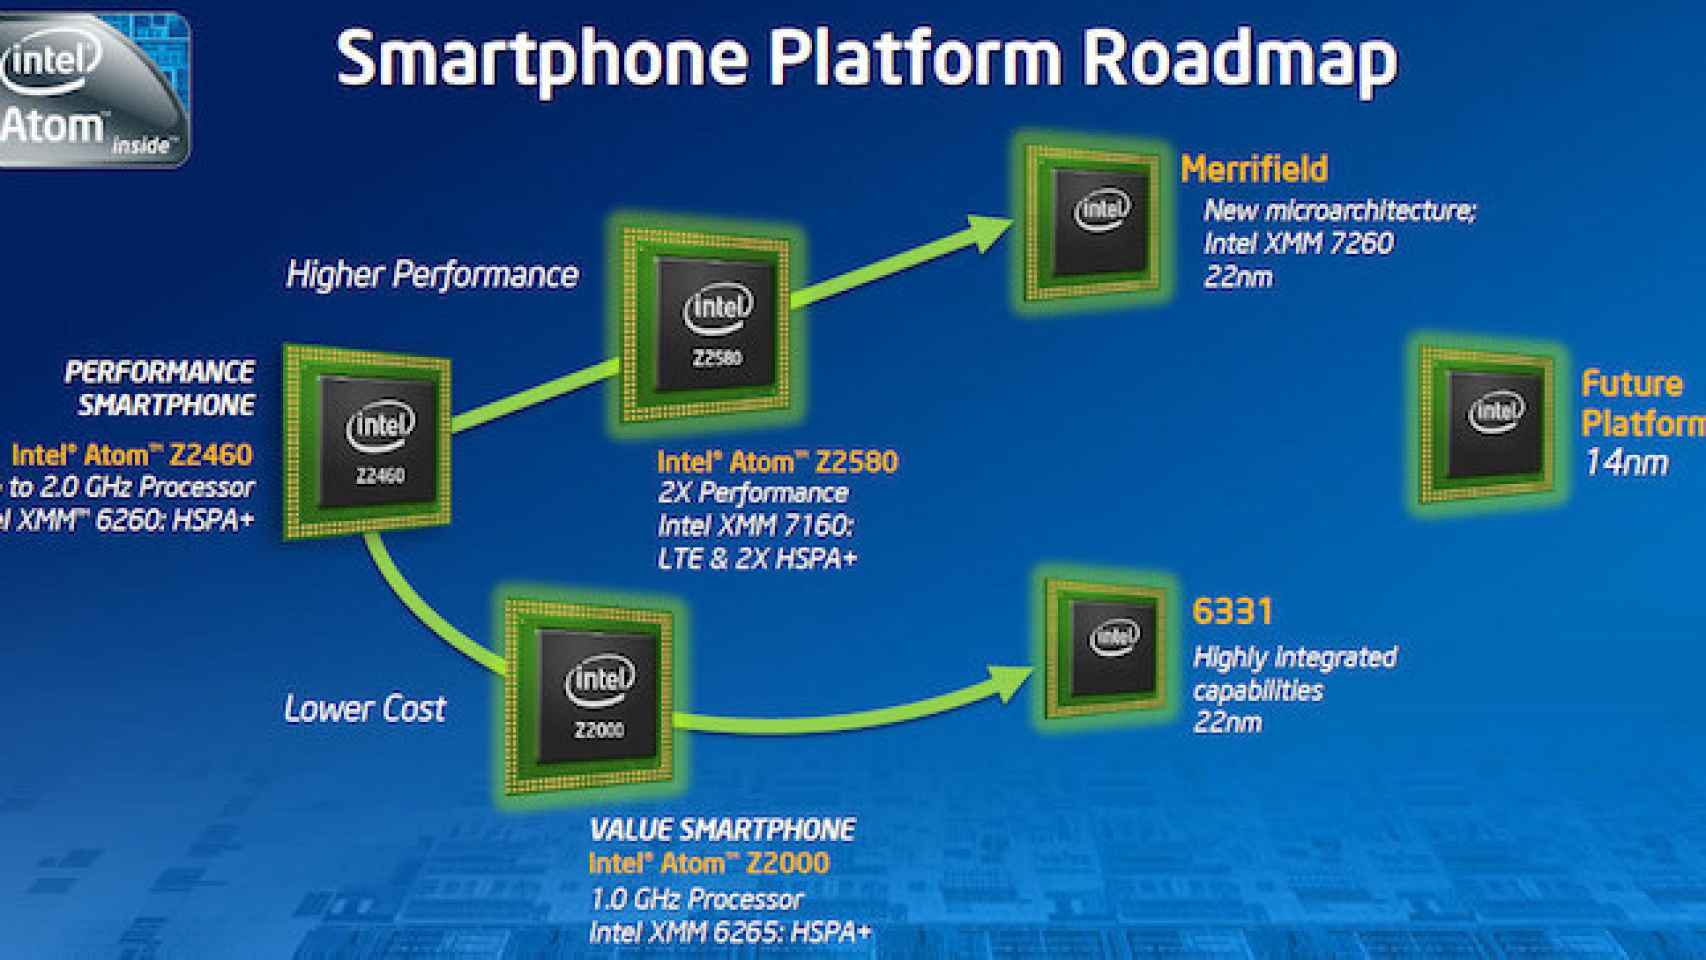 Intel diseña su agresiva estrategia de cara a 2014 para asaltar el mercado de tablets low cost en Android